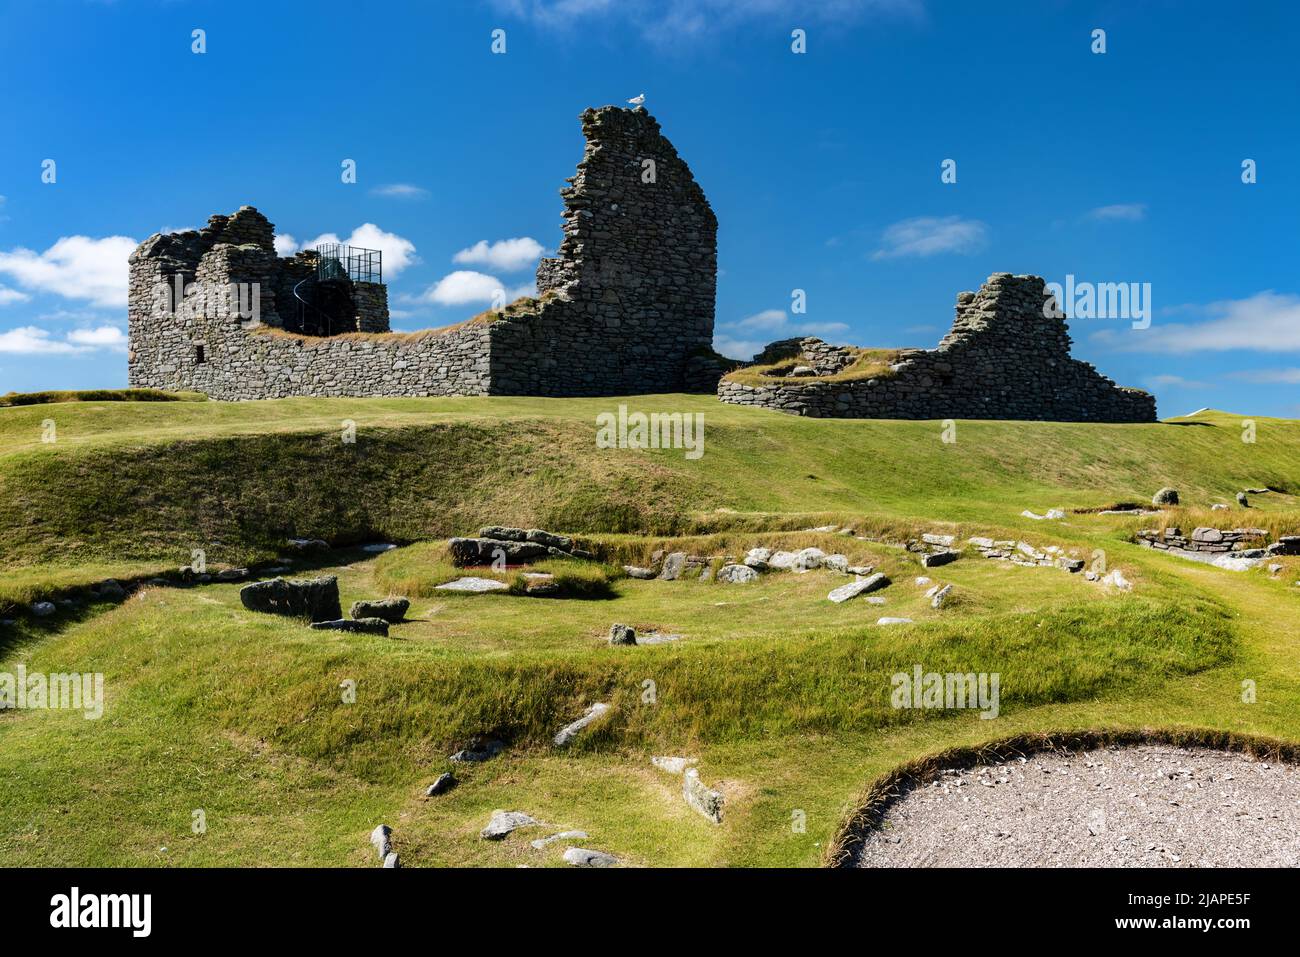 Jarlshof es el yacimiento arqueológico prehistórico más conocido de Shetland, Escocia. Se encuentra en Sumburgh, Mainland, Shetland y ha sido descrito como 'uno de los sitios arqueológicos más notables jamás excavados en las Islas Británicas'. Contiene restos que datan del 2500 BCE hasta el siglo 17th CE Foto de stock